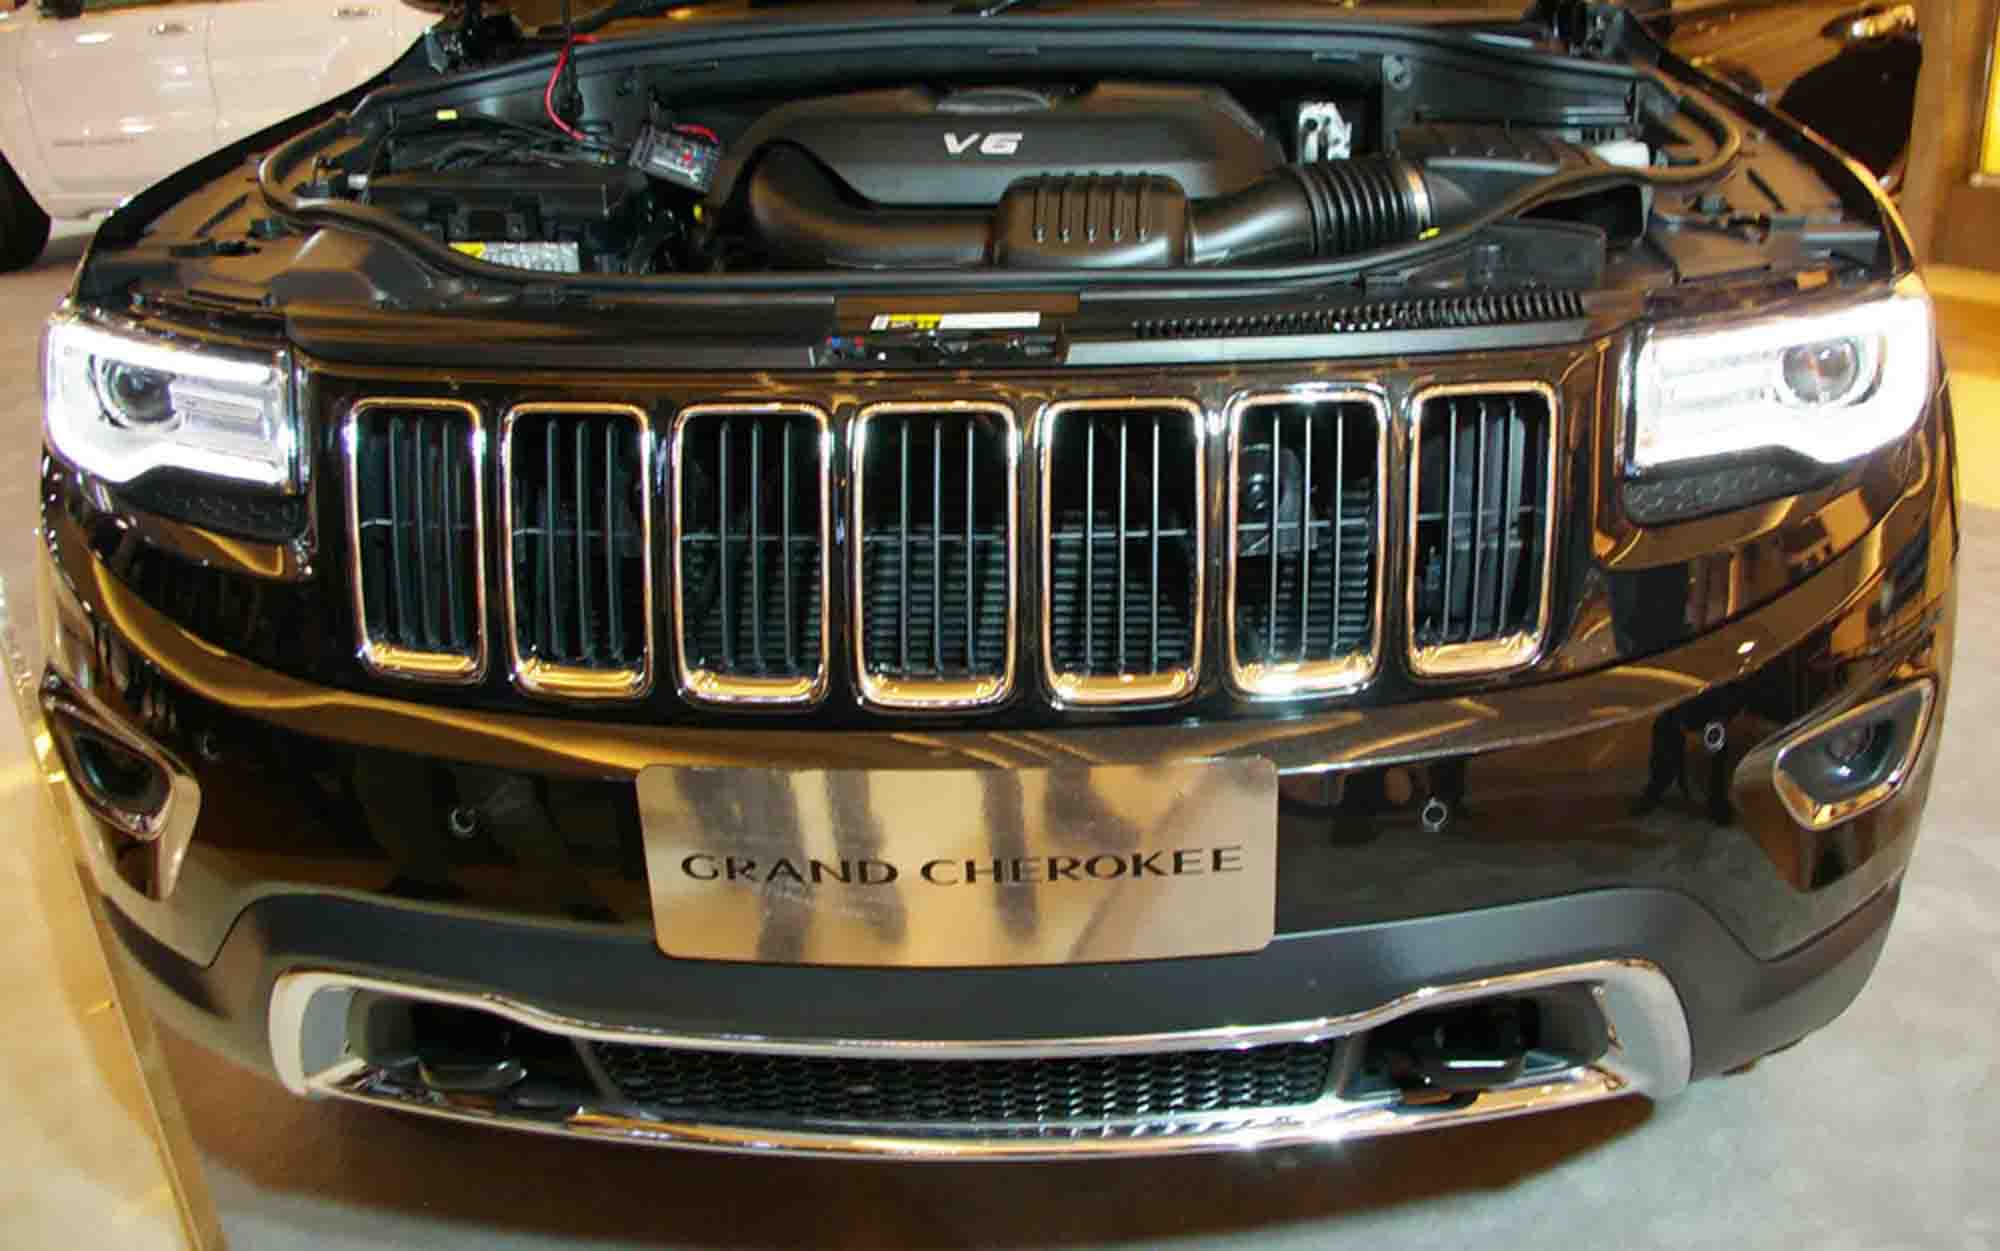  Jeep  Grand Cherokee  Baru Pakai Mesin  3 0L Carmudi Indonesia